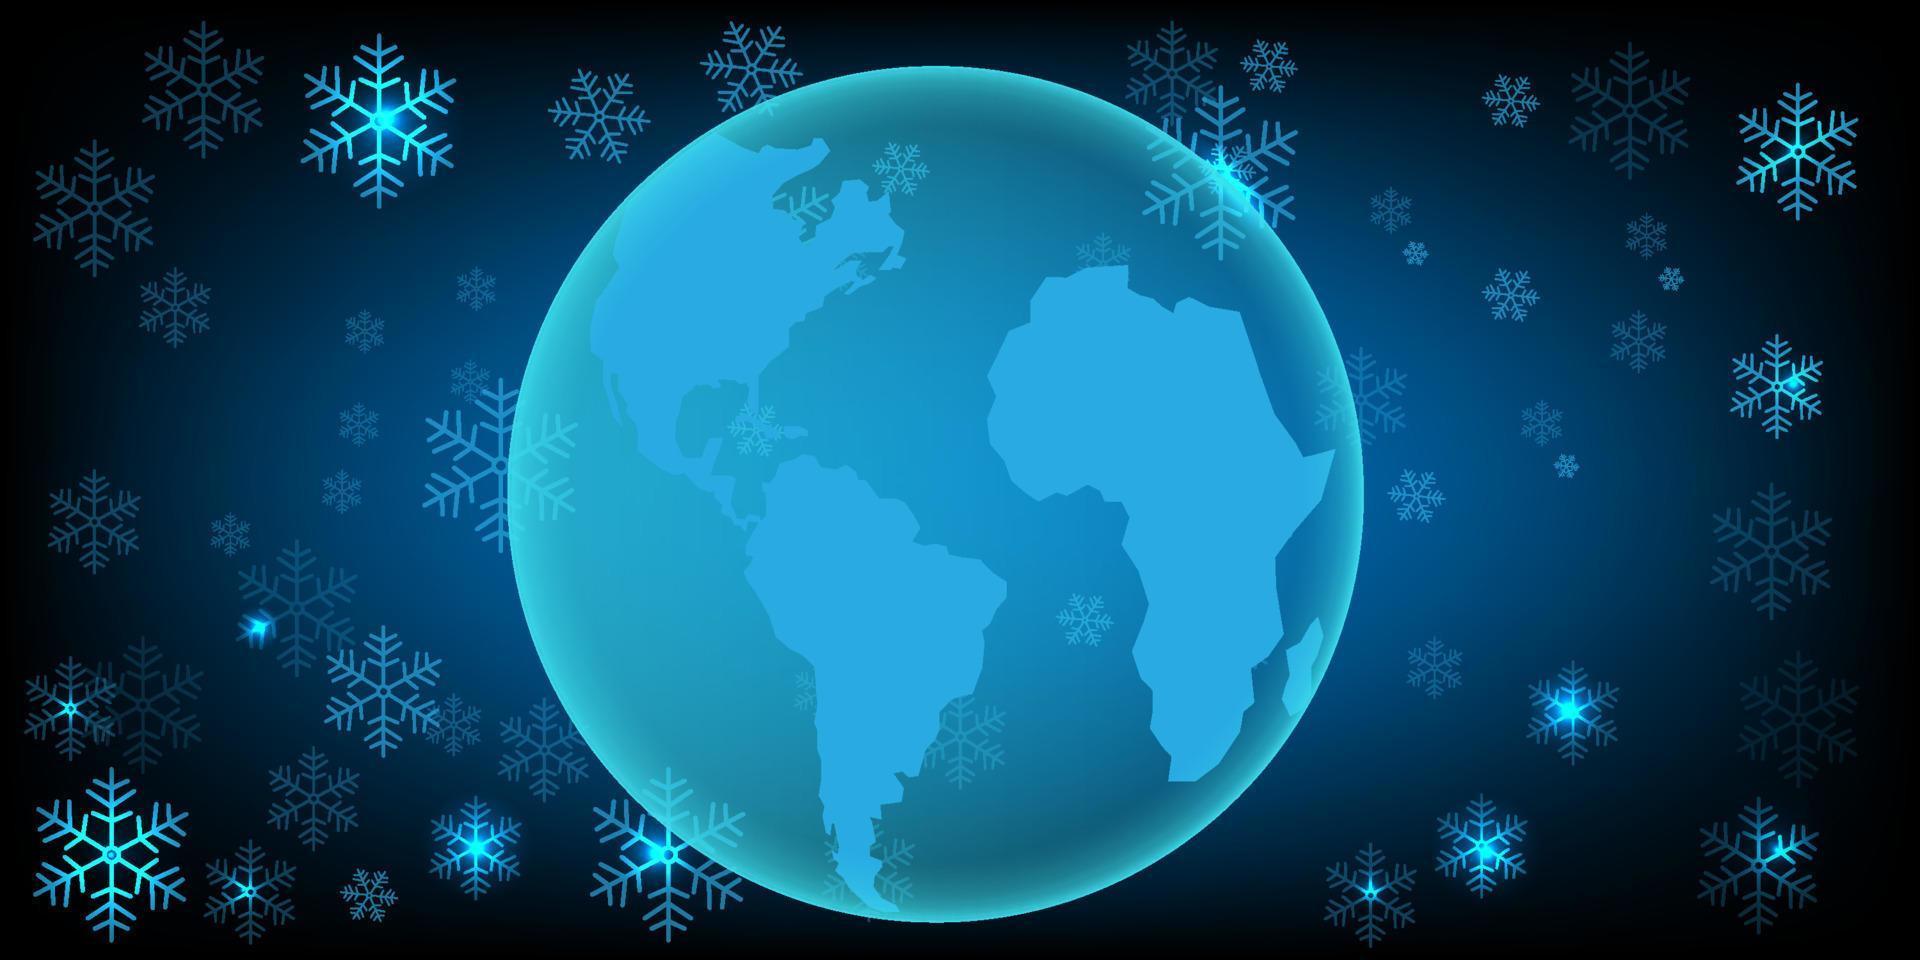 neve de inverno de natal com mapa do mundo futurista padrão fundo celebração temporada feriado papel de embrulho, cartão de felicitações para decorar produto premium vetor